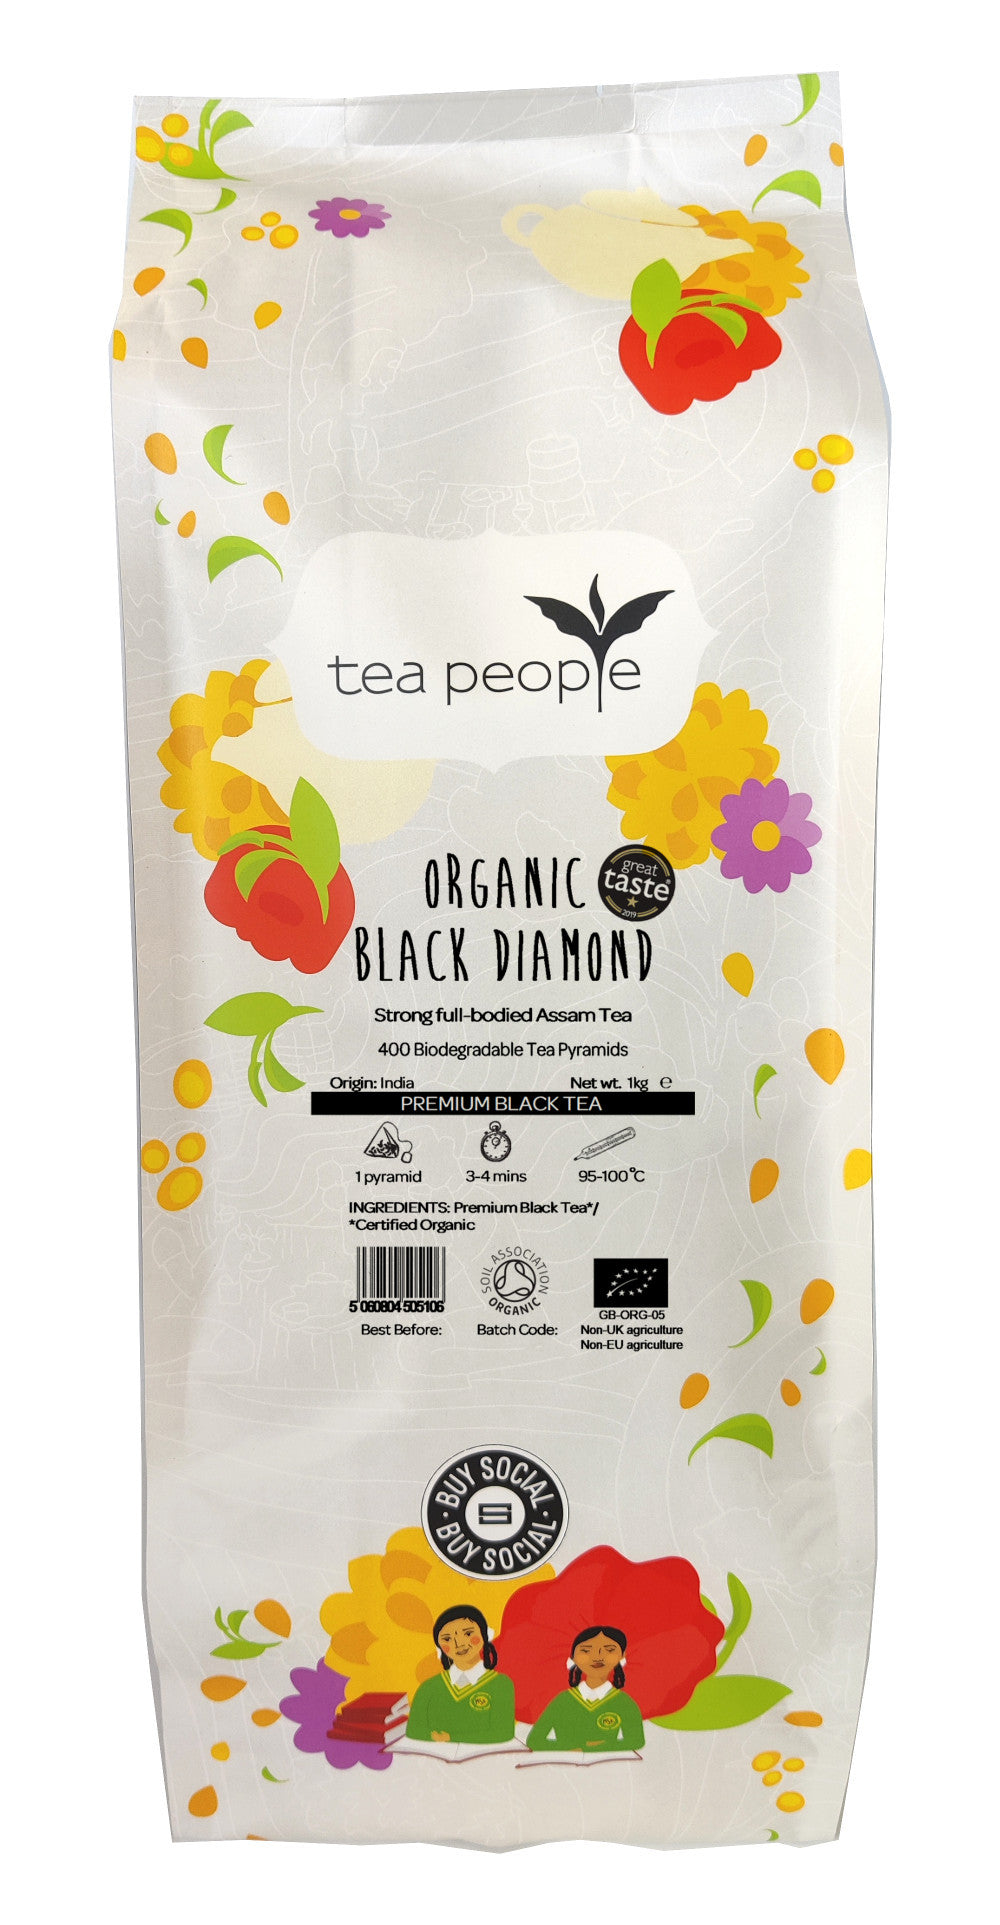 Organic Black Diamond - Black Tea Pyramids - 400 Pyramid Large Catering Pack